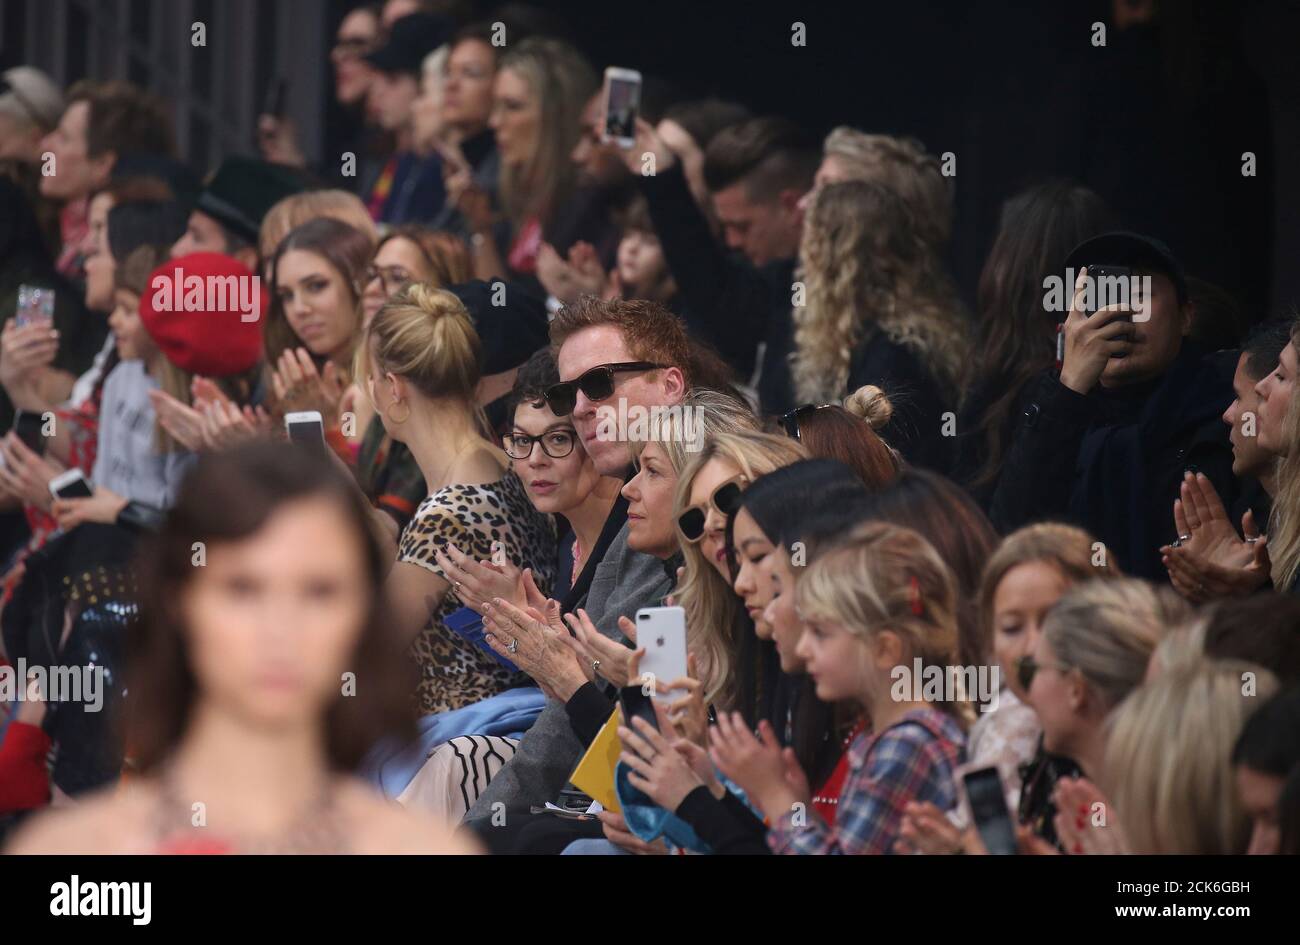 Los actores Damian Lewis y su esposa Helen McCrory (C) observan un modelo durante el espectáculo Temperley London en London Fashion Week, Londres, Gran Bretaña, 18 de febrero de 2018. REUTERS/Paul Hackett Foto de stock